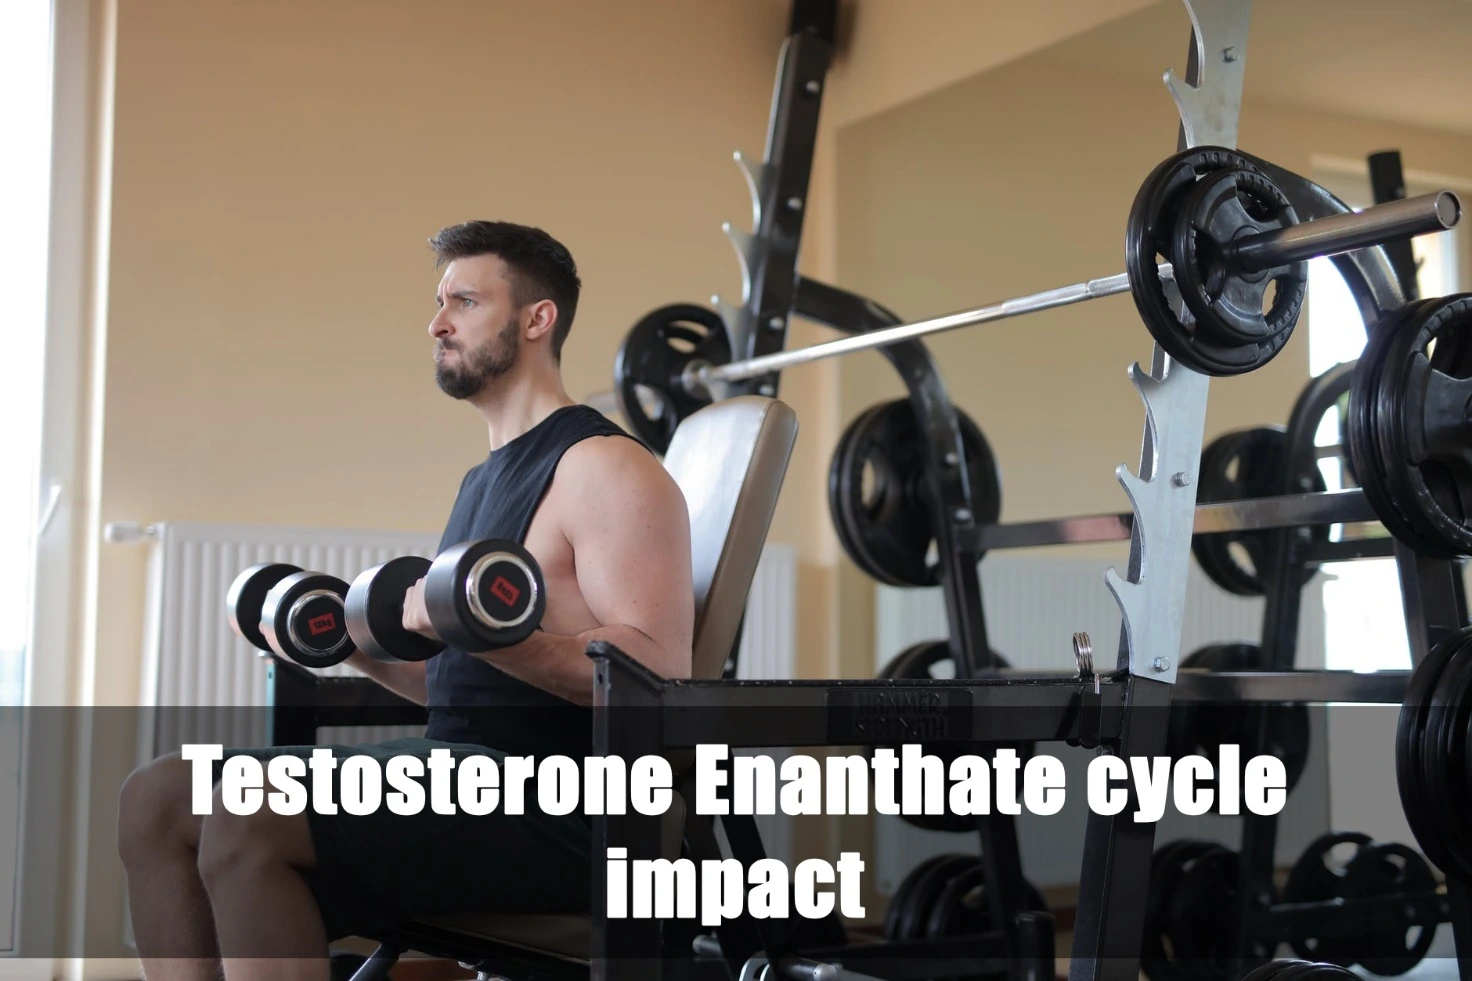 Ciclo di Testosterone Enantato